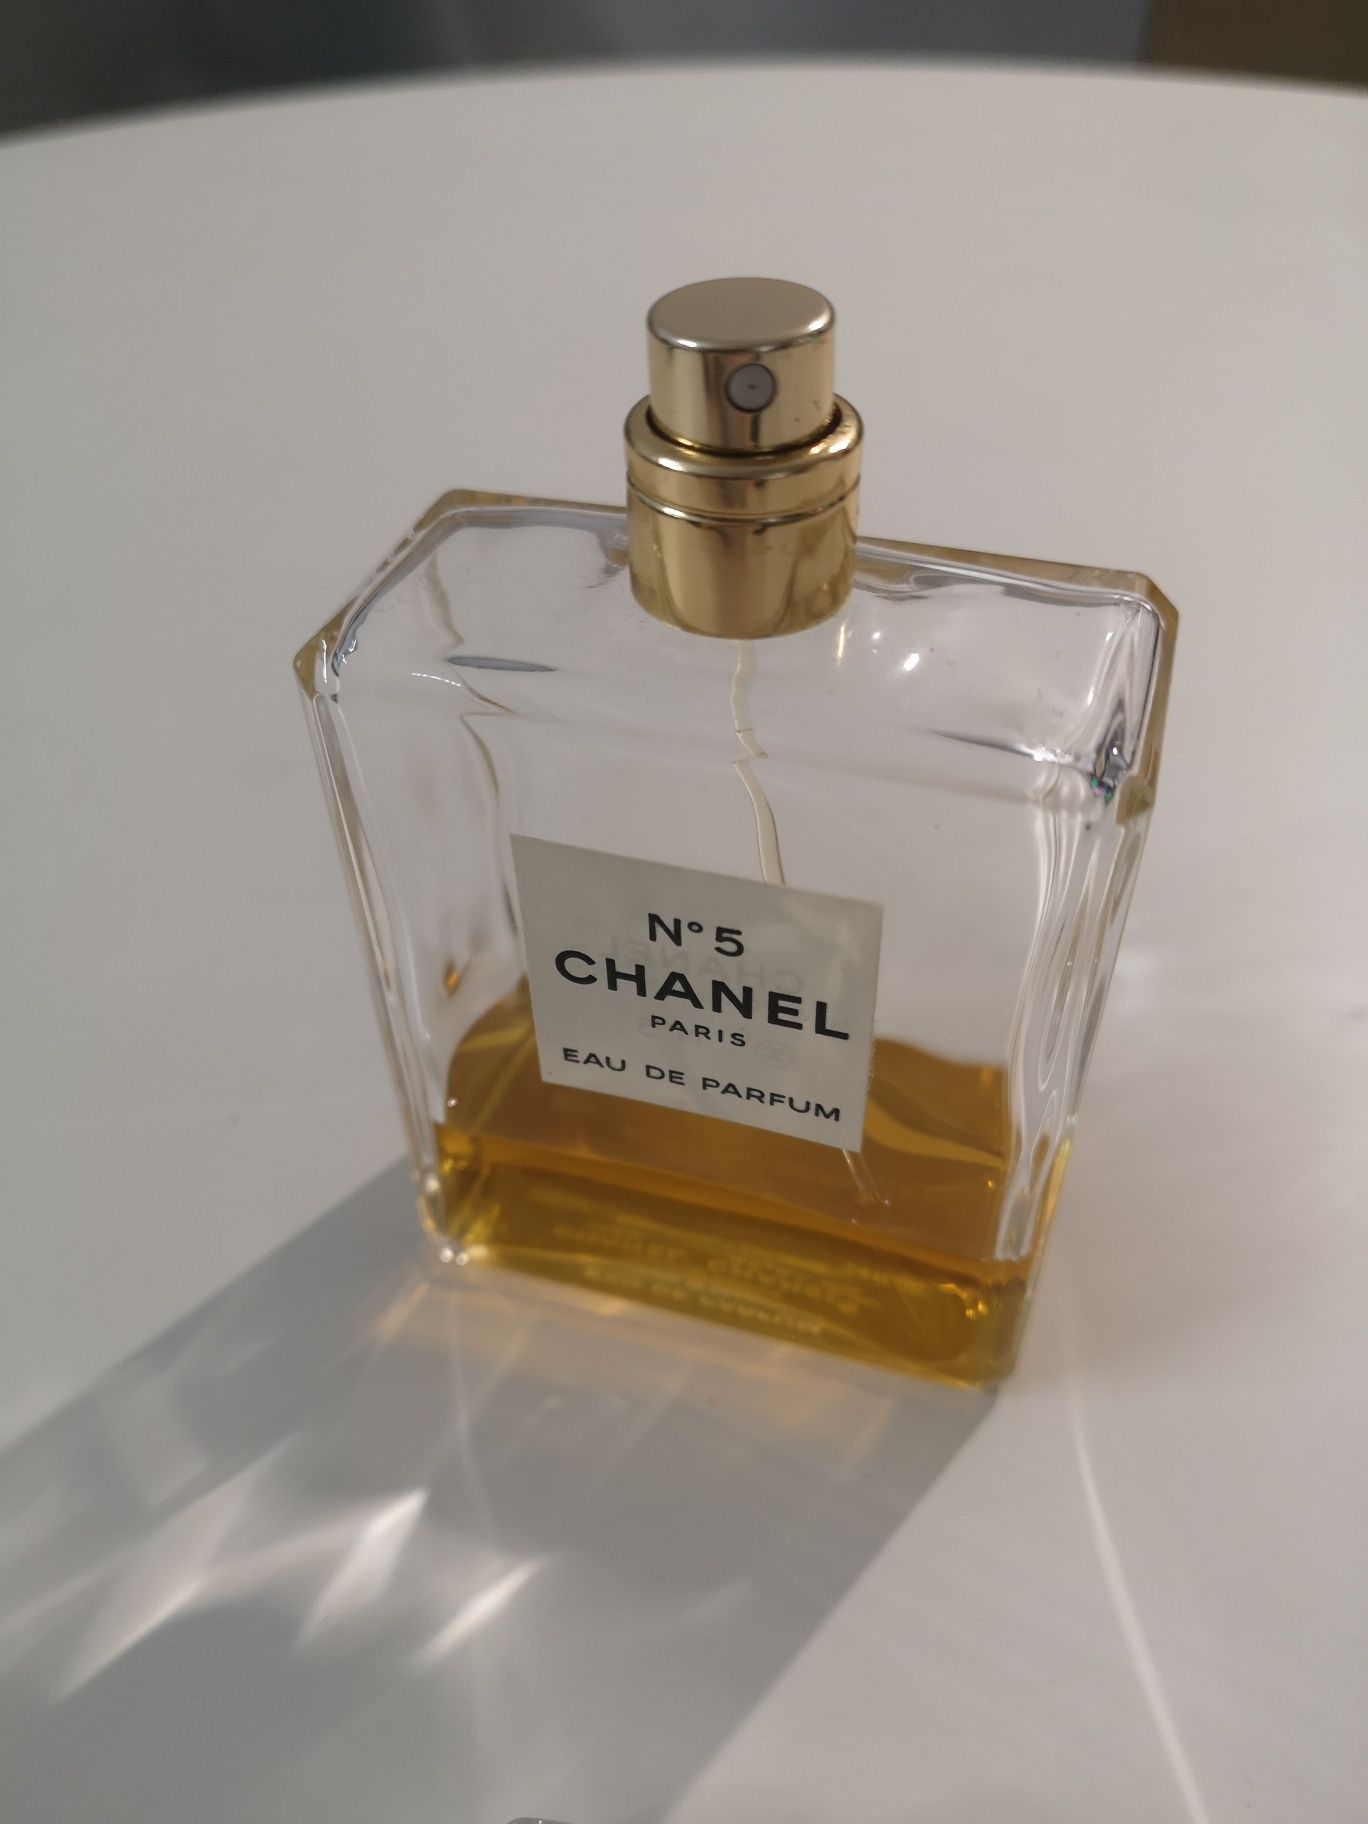 Chanel #5 Eau de parfum